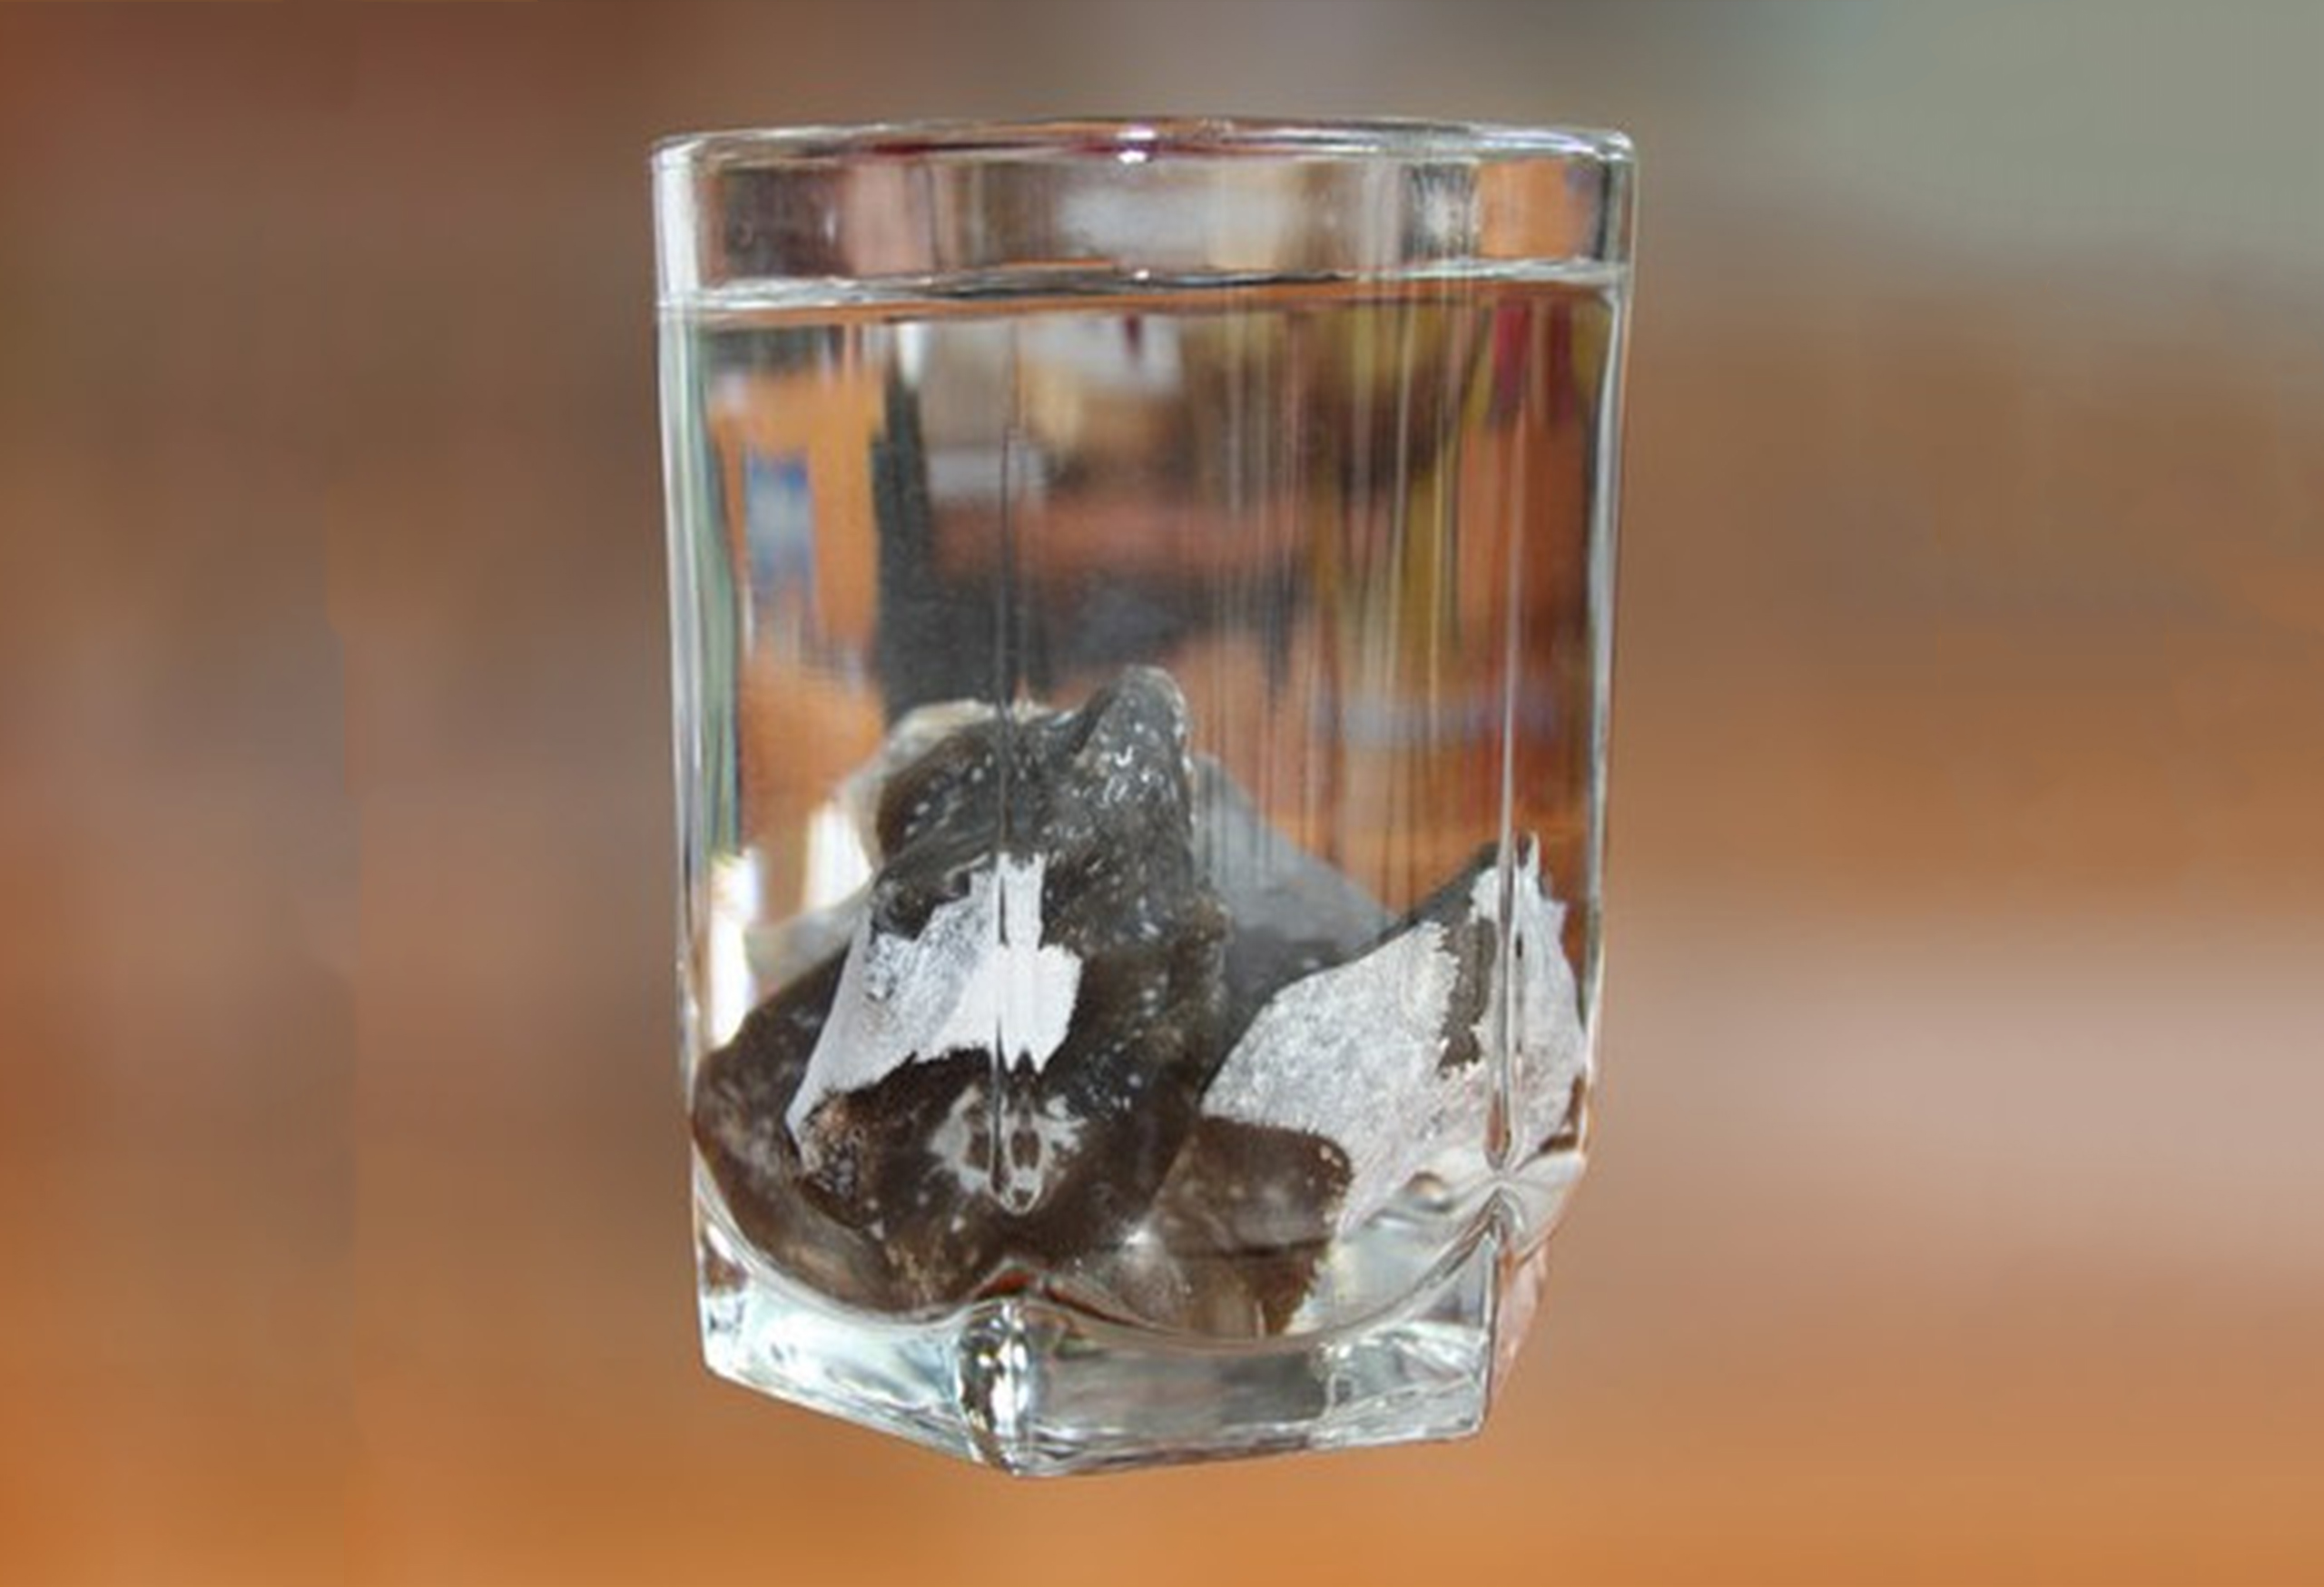 Серебро растворимо в воде. Камень в стакане с водой. Стакан с камешками. Камень тонет в воде. Опыт с камнем и водой.